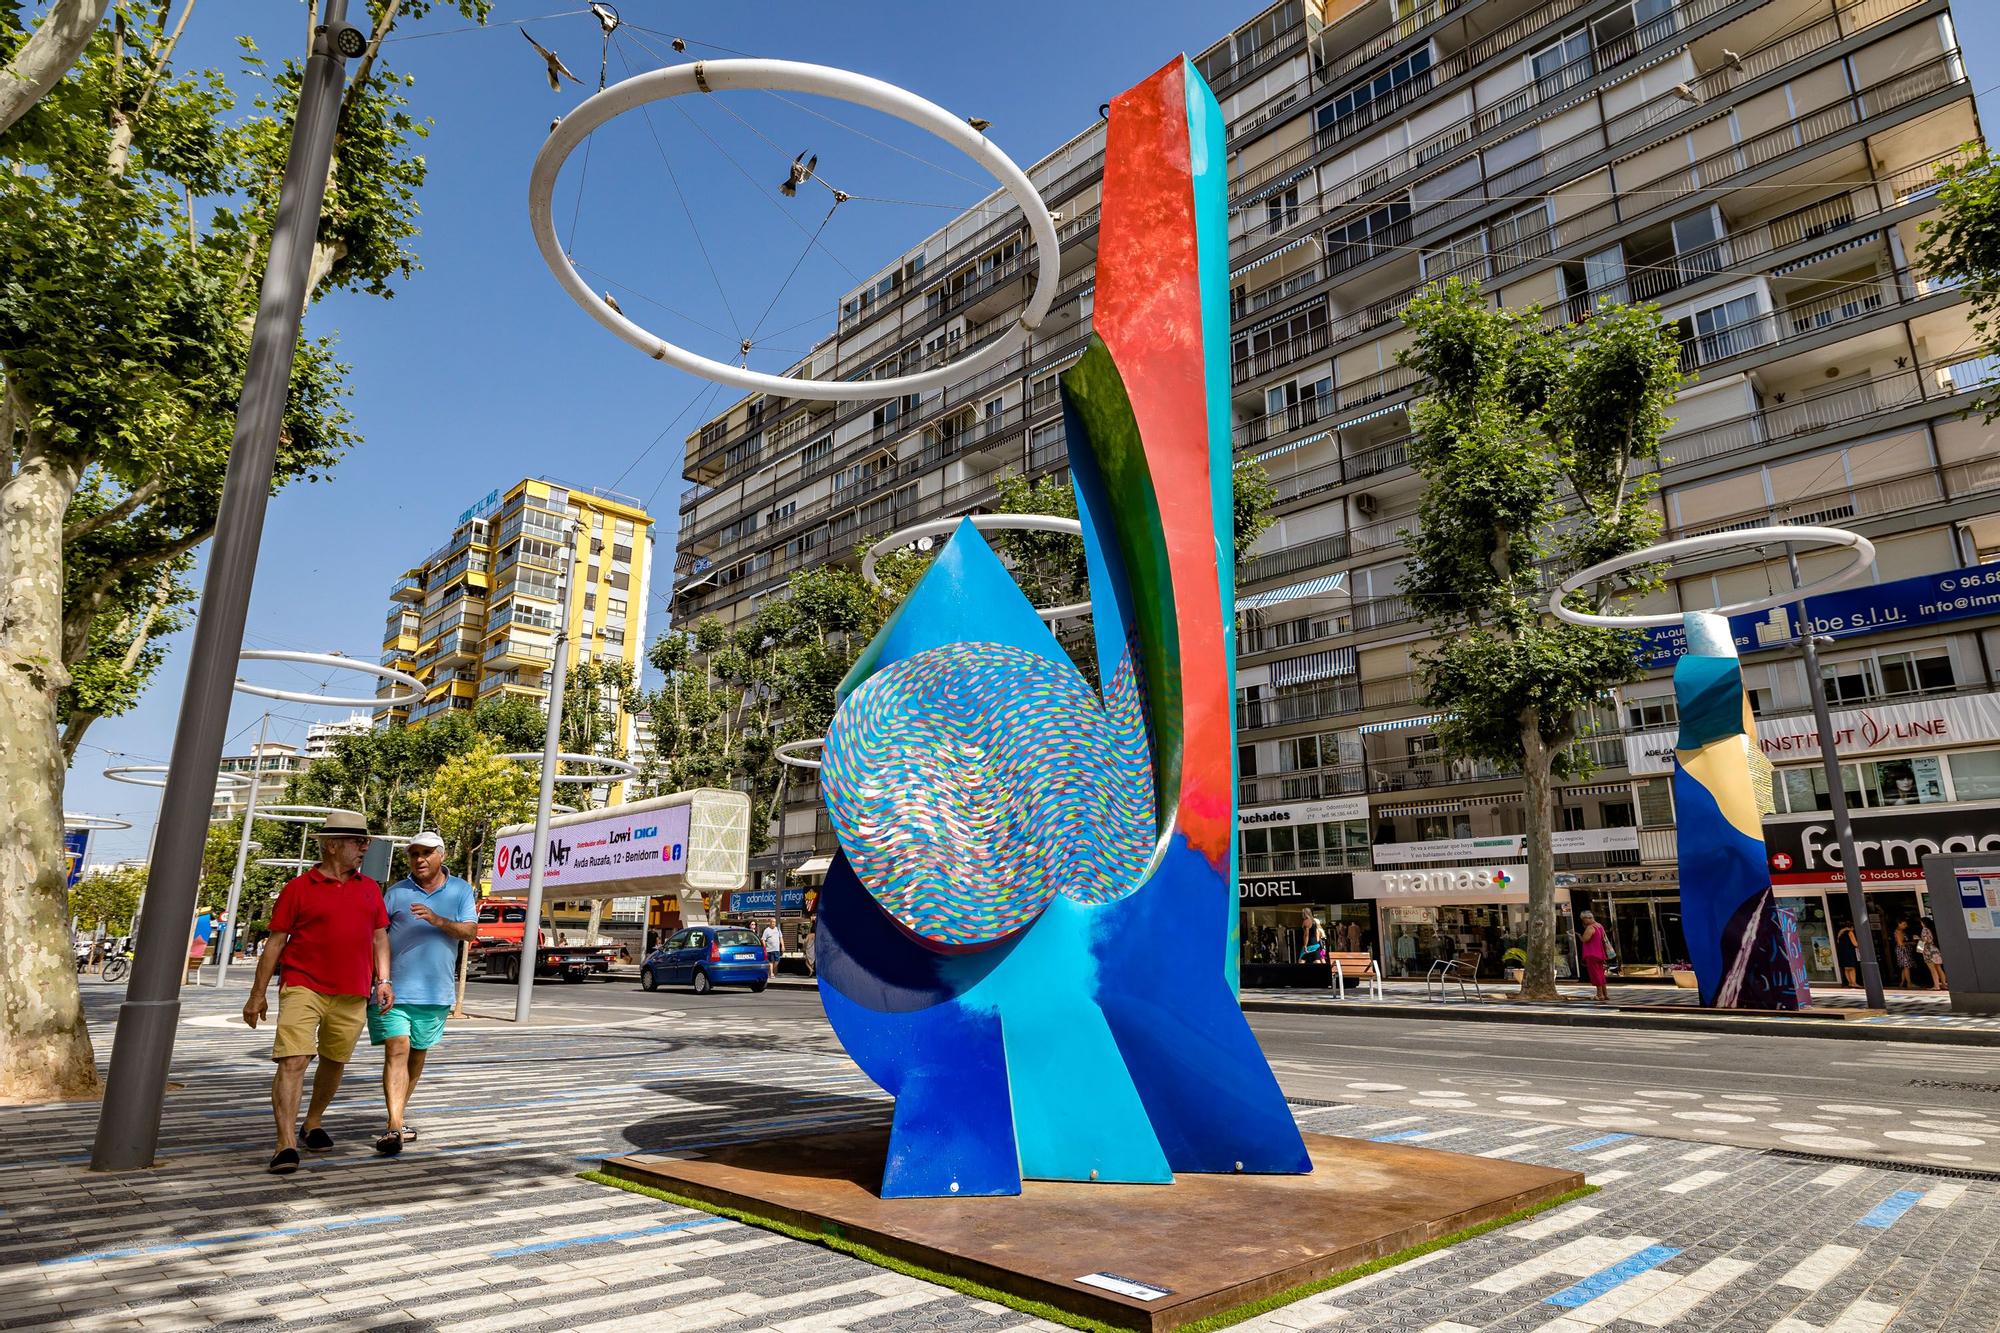 La ciudad acoge 16 esculturas de gran formato del artista Cristóbal Gabarrón, inspiradas en el palacio granadino, que se expondrán gracias a la colaboración entre el Ayuntamiento y la Ciutat de les Arts i les Ciències. Se podrán visitar hasta el 31 de enero de 2023